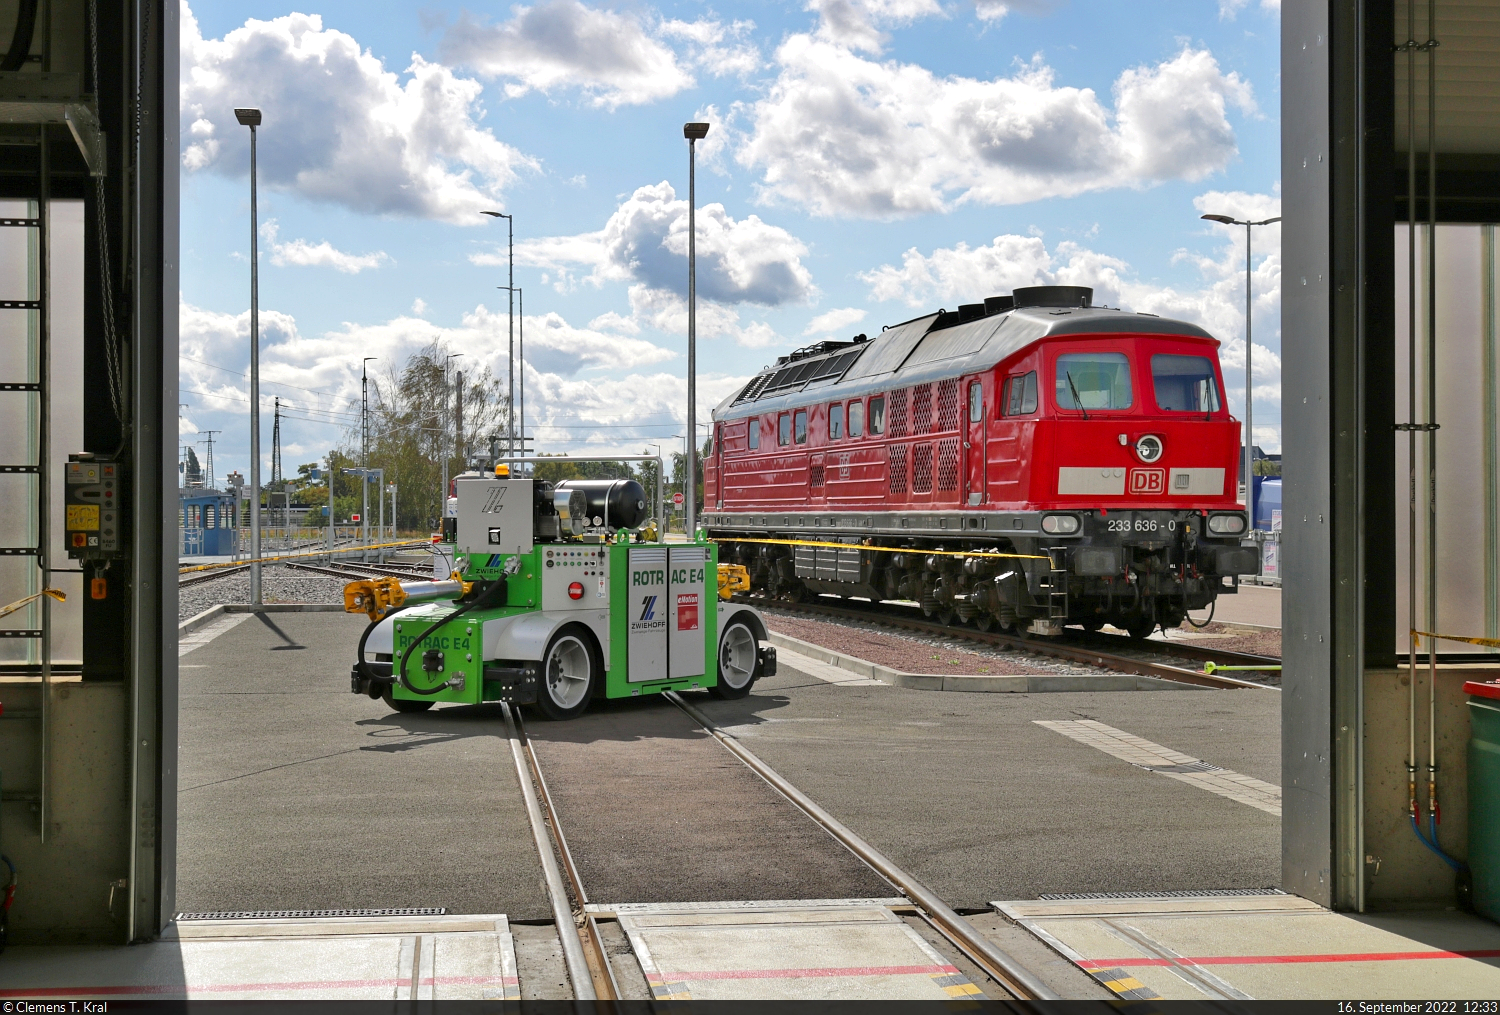 Durch die Tore der Lokwerkstatt geschaut: Unweit der neuen Drehscheibe an der Zugbildungsanlage (ZBA) Halle (Saale) haben sich 233 636-0 (232 636-1 | 132 636-2) und ein Zweiwege-Rangiergerät (Zwiehoff ROTRAC E4) anlässlich des Tags der Schiene versammelt.

🧰 DB Cargo
🕓 16.9.2022 | 12:33 Uhr